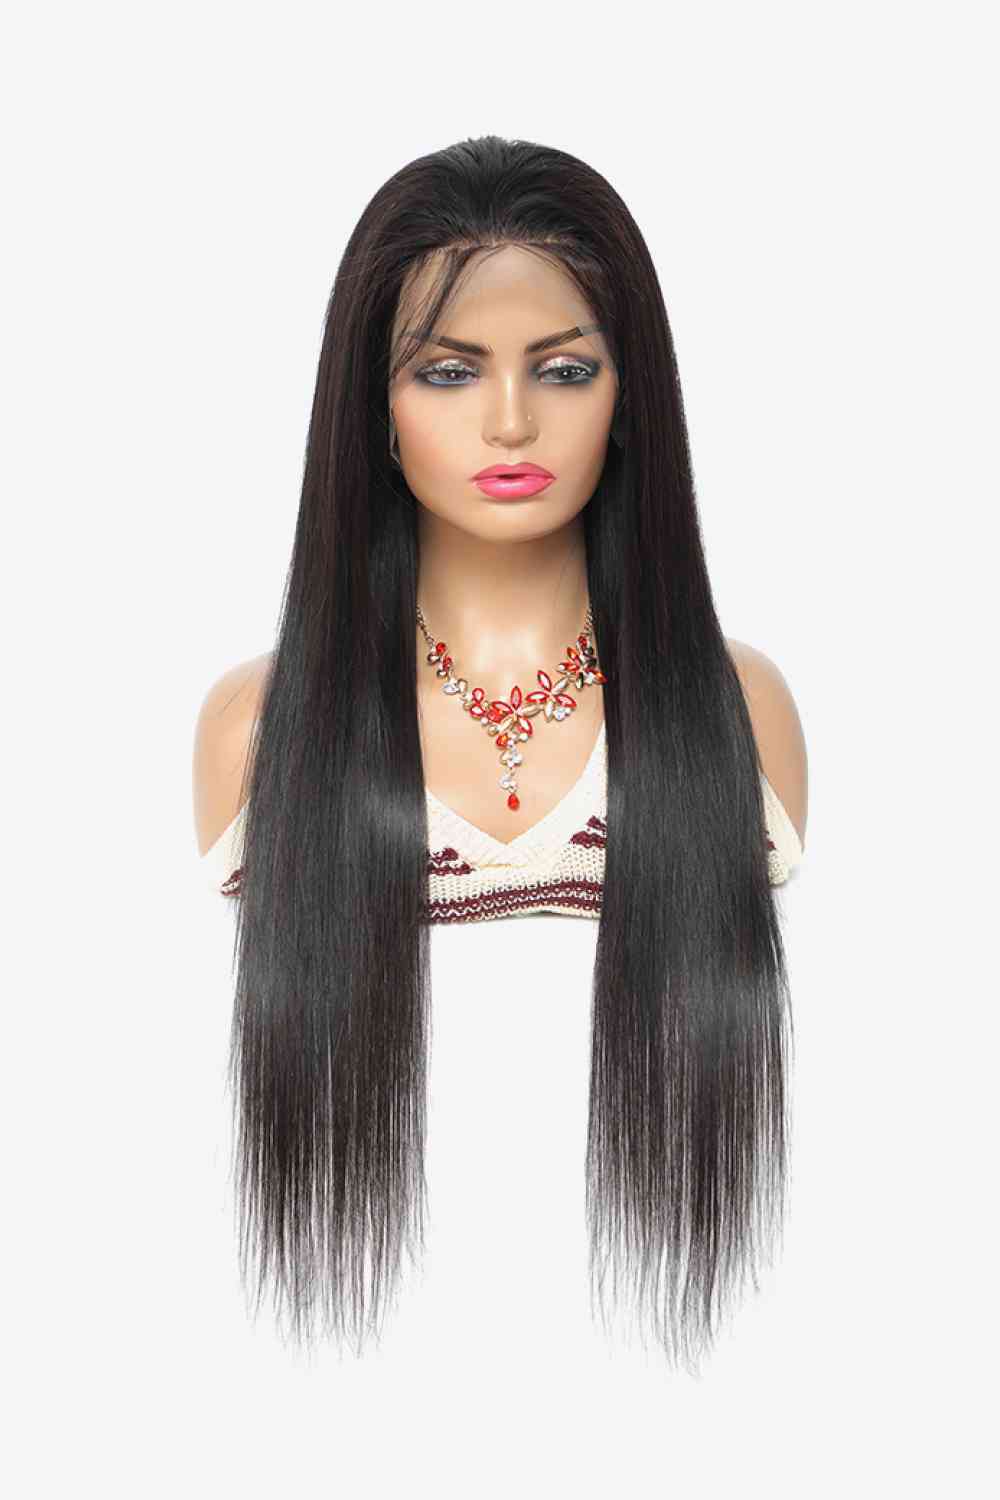 18" densidad natural del color el 150% del pelo de la Virgen de las pelucas del frente del cordón 13x4